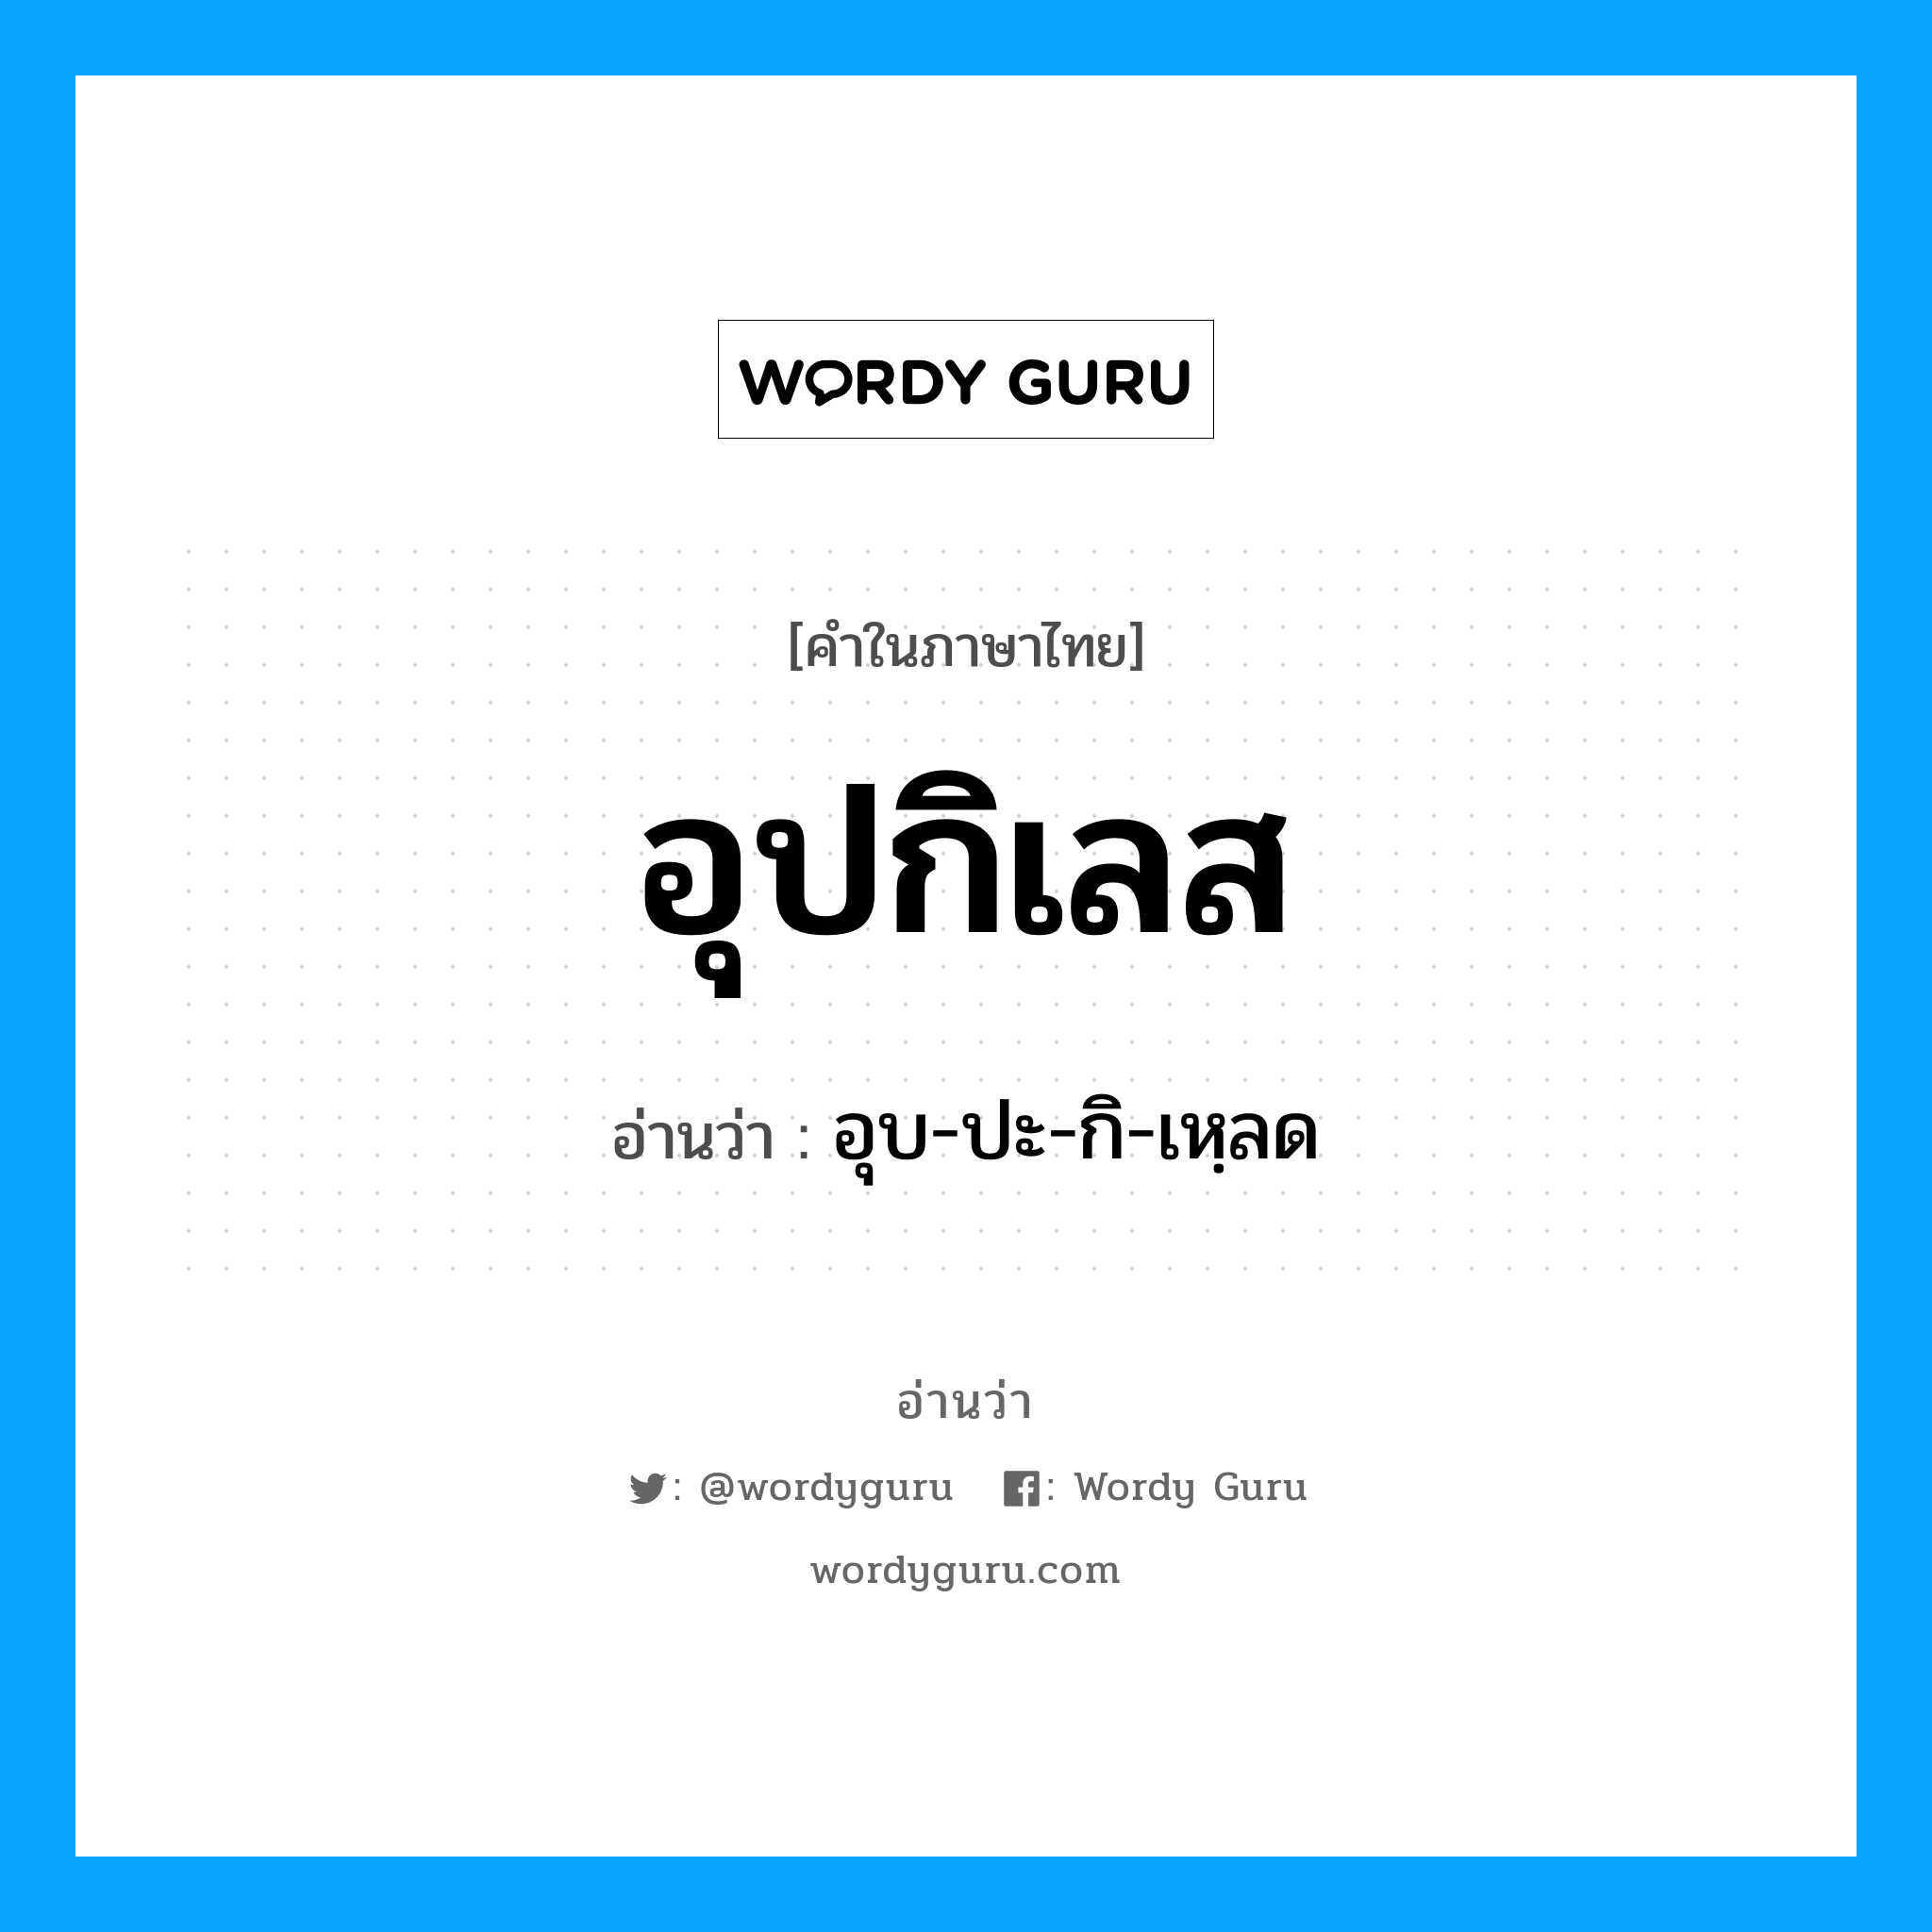 อุบ-ปะ-กิ-เหฺลด เป็นคำอ่านของคำไหน?, คำในภาษาไทย อุบ-ปะ-กิ-เหฺลด อ่านว่า อุปกิเลส